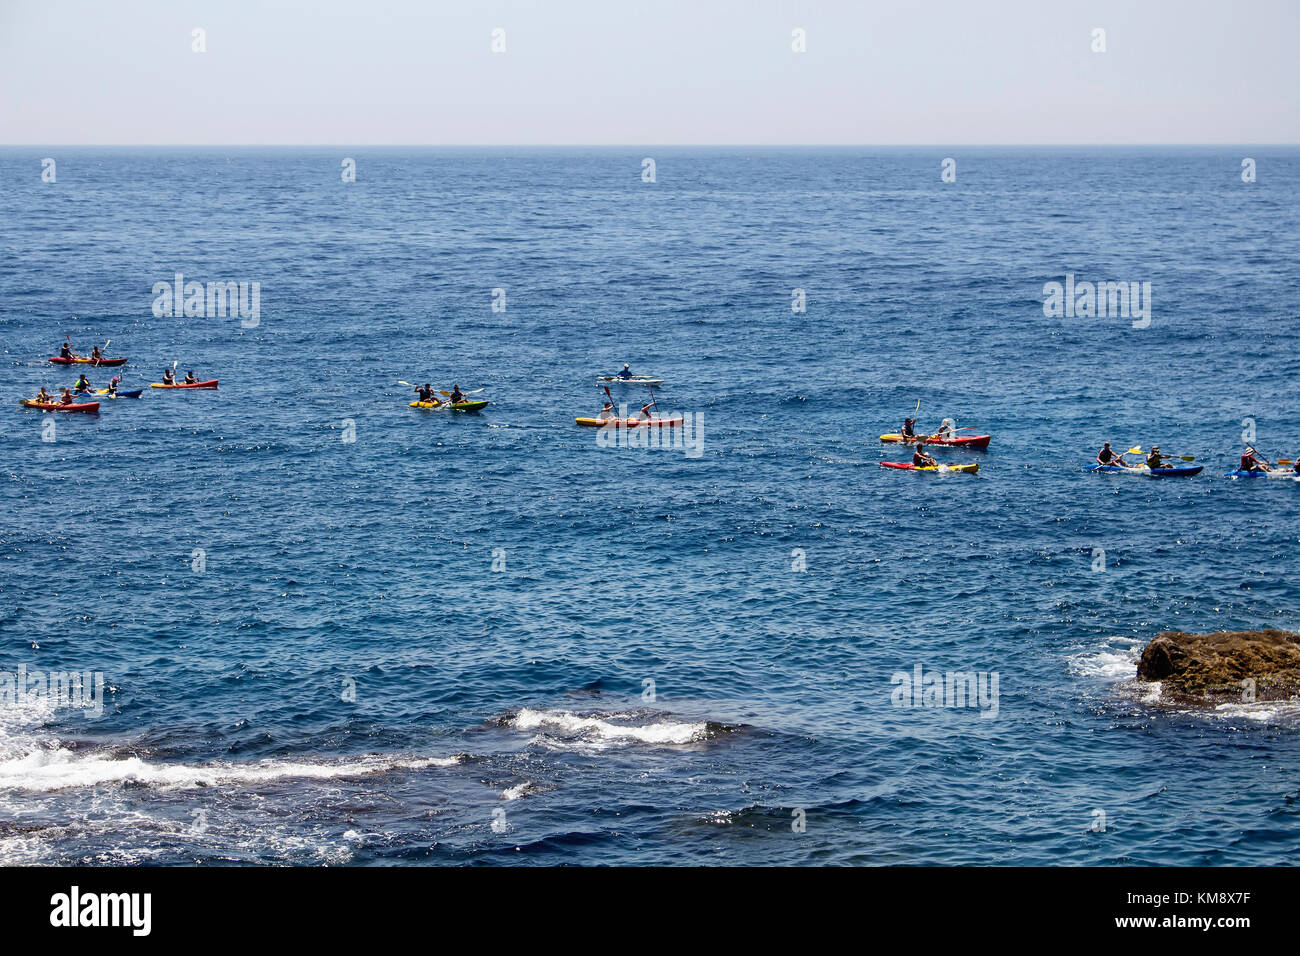 Beaucoup de gens de l'eau des kayaks ride en face de la vieille ville de Dubrovnik dans la mer bleue de la Méditerranée en été. Banque D'Images